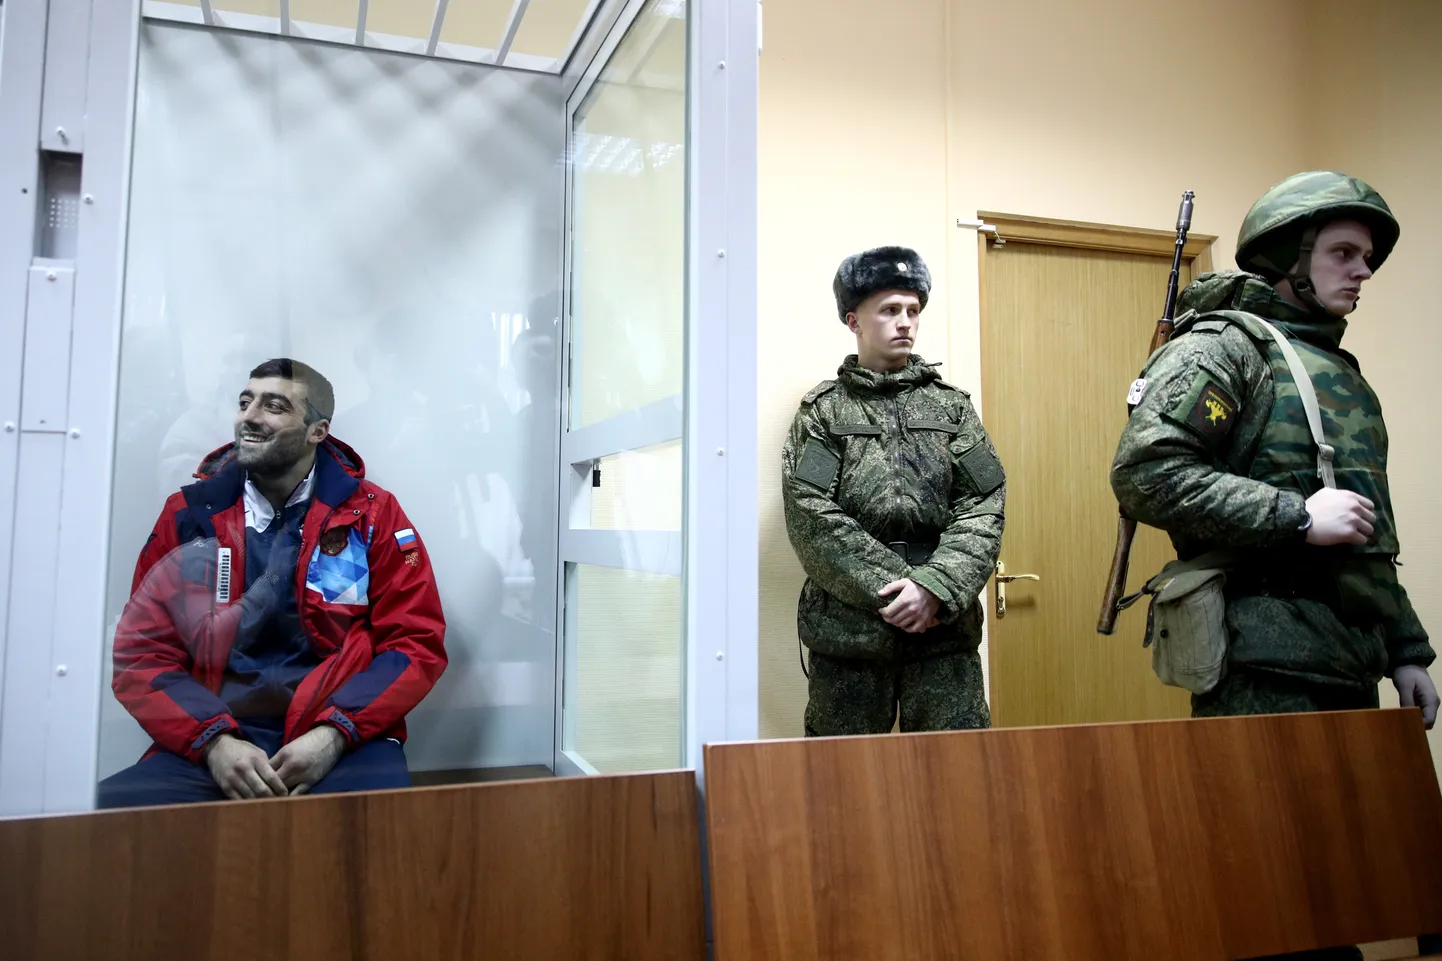 Venemaa kahekordne poksitšempion Georgi Kušitašvili (vasakul) süüdistati kalletungis Vene rahvuskaardi ohvitserile  ja sai 235. karnisoni militaarkohtus teada kohtuotsuse.